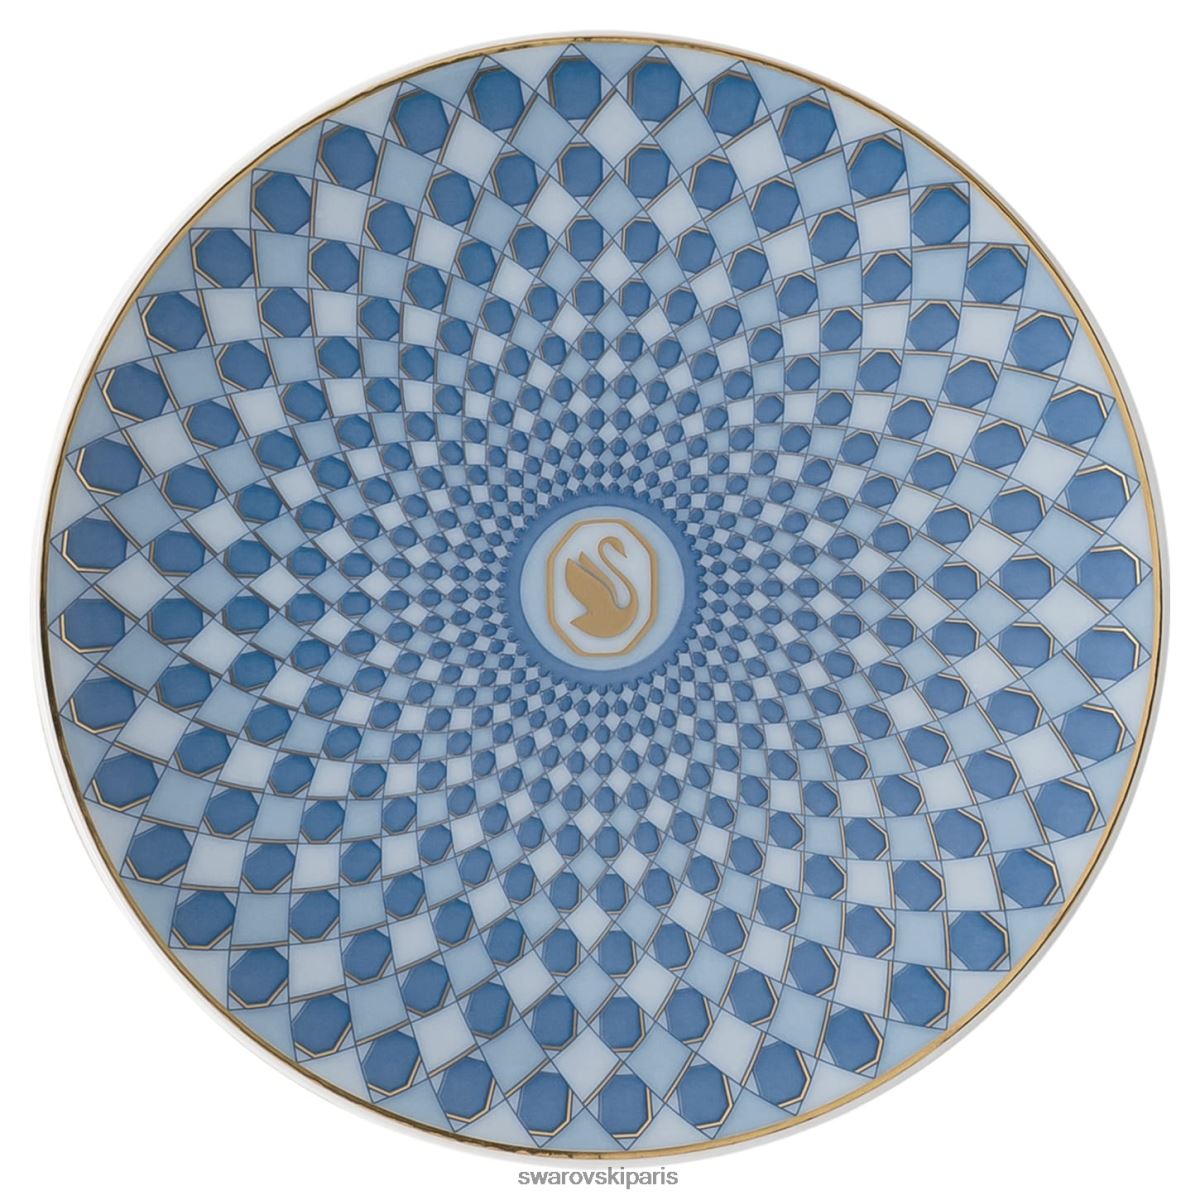 décorations Swarovski plaque signalétique porcelaine, bleu RZD0XJ1748